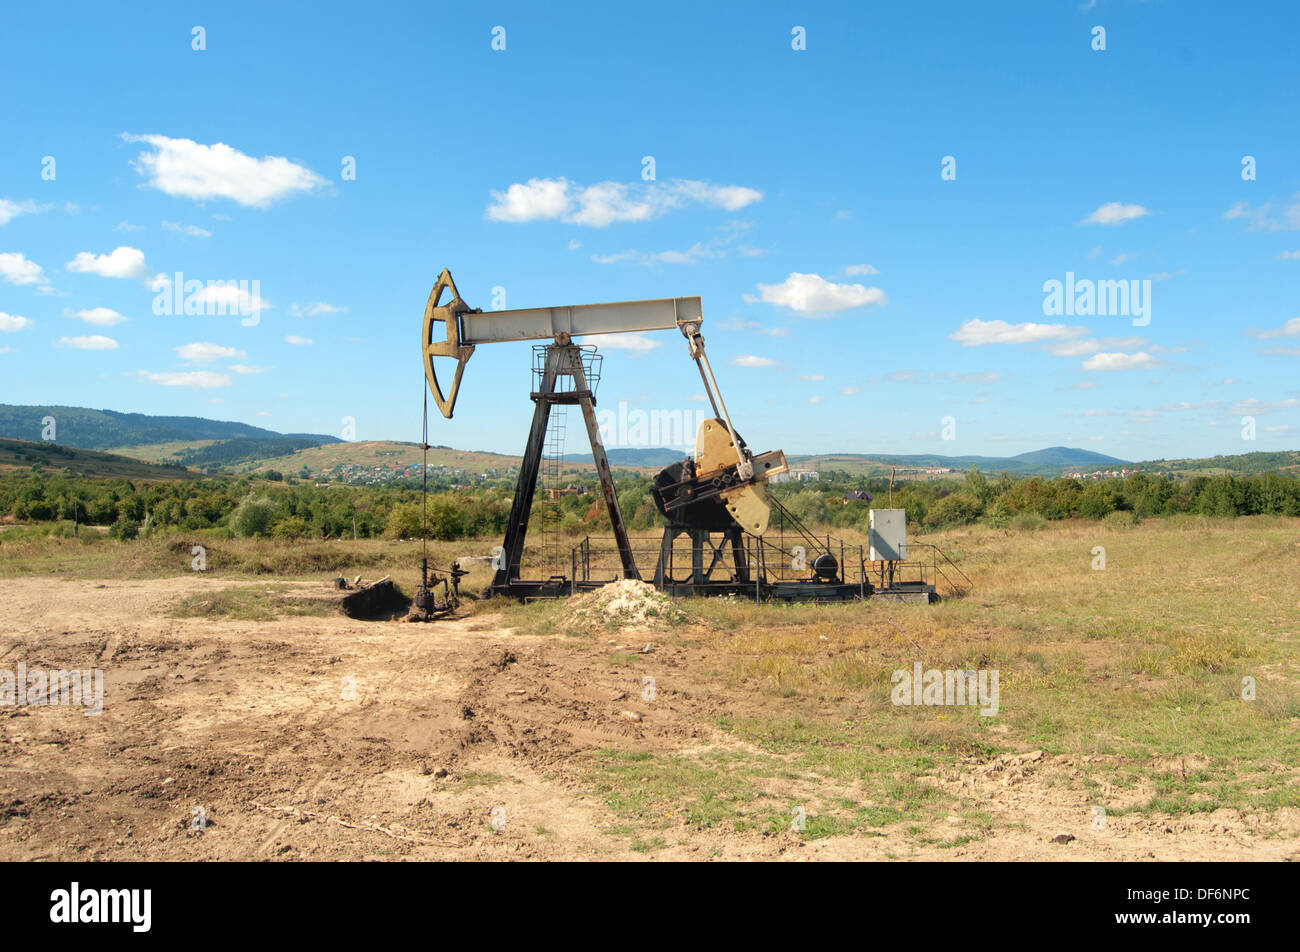 El trabajo de la bomba de aceite en un campo petrolero de gato Foto de stock